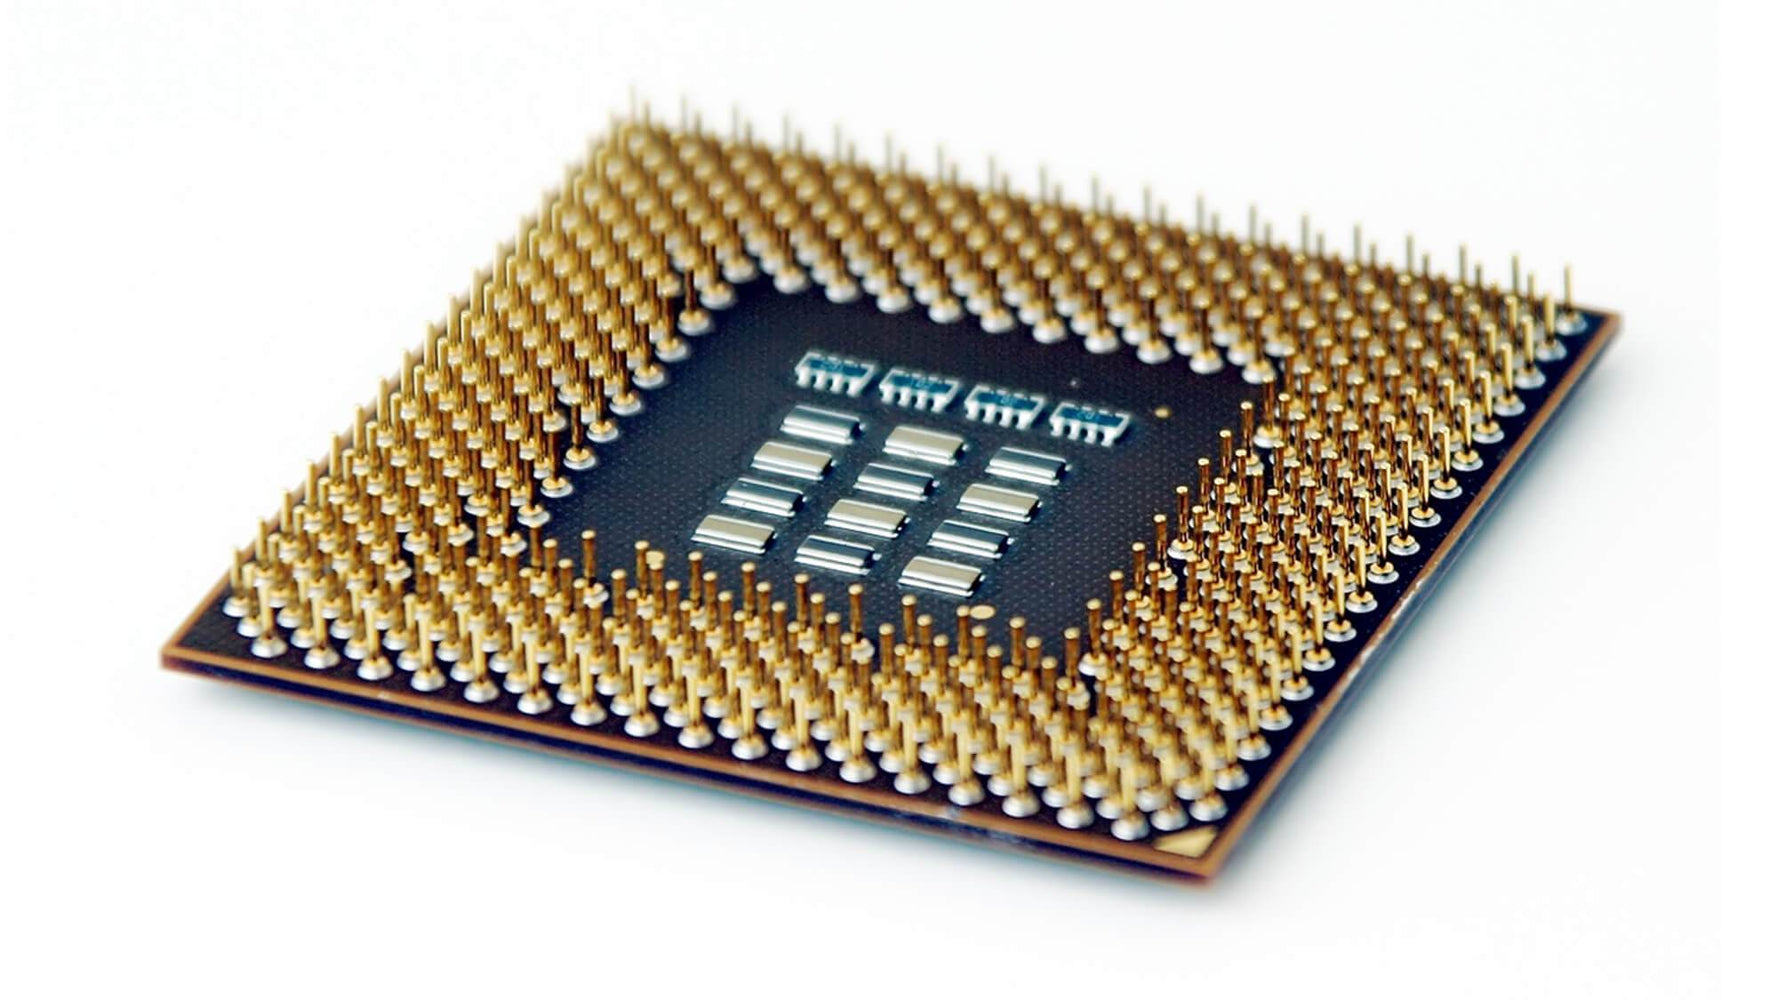 BX80605750 - Intel Core i5-750 Quad Core 2.66GHz 2.50GT/s DMI 8MB L3 Cache Socket LGA1156 Desktop Processor